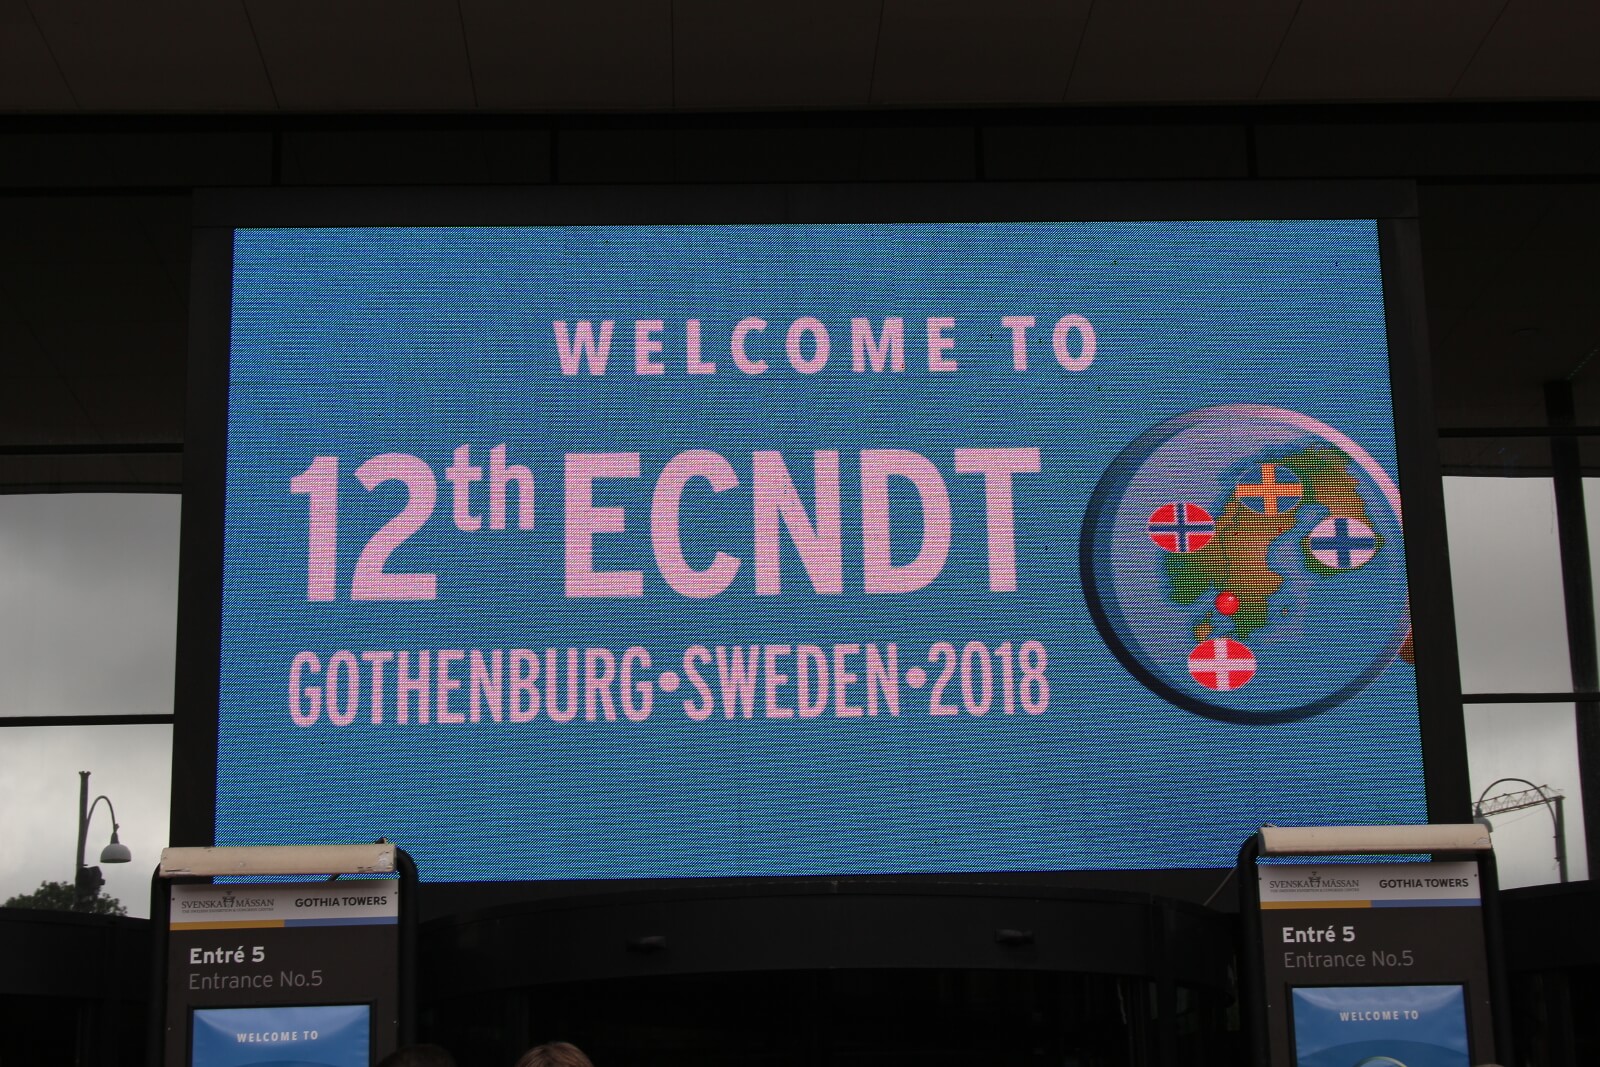 European conference of NDT (ECNDT) 2018